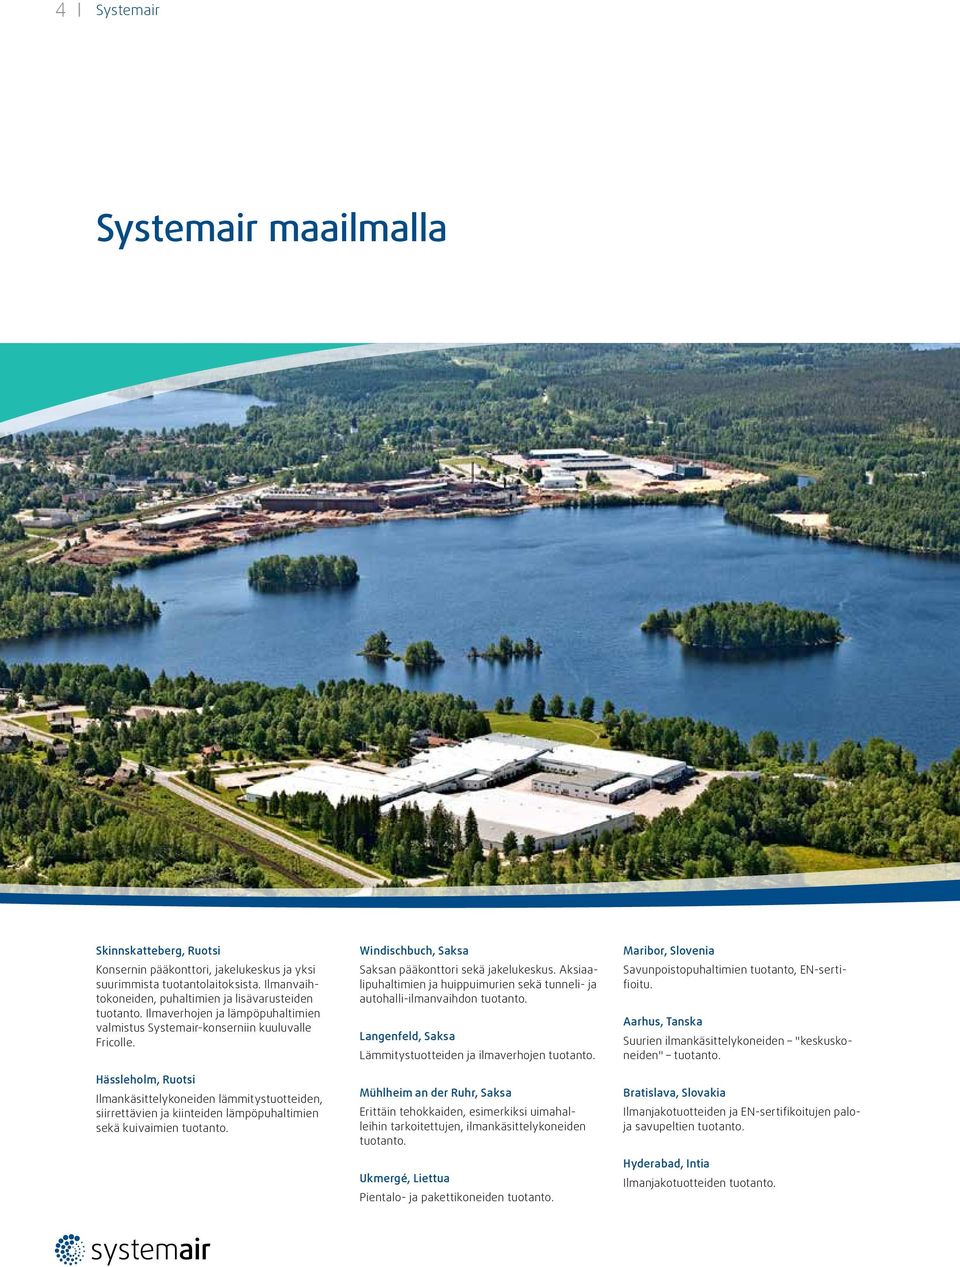 Hässleholm, Ruotsi Ilmankäsittelykoneiden lämmitystuotteiden, siirrettävien ja kiinteiden lämpöpuhaltimien sekä kuivaimien tuotanto. Windischbuch, Saksa Saksan pääkonttori sekä jakelukeskus.